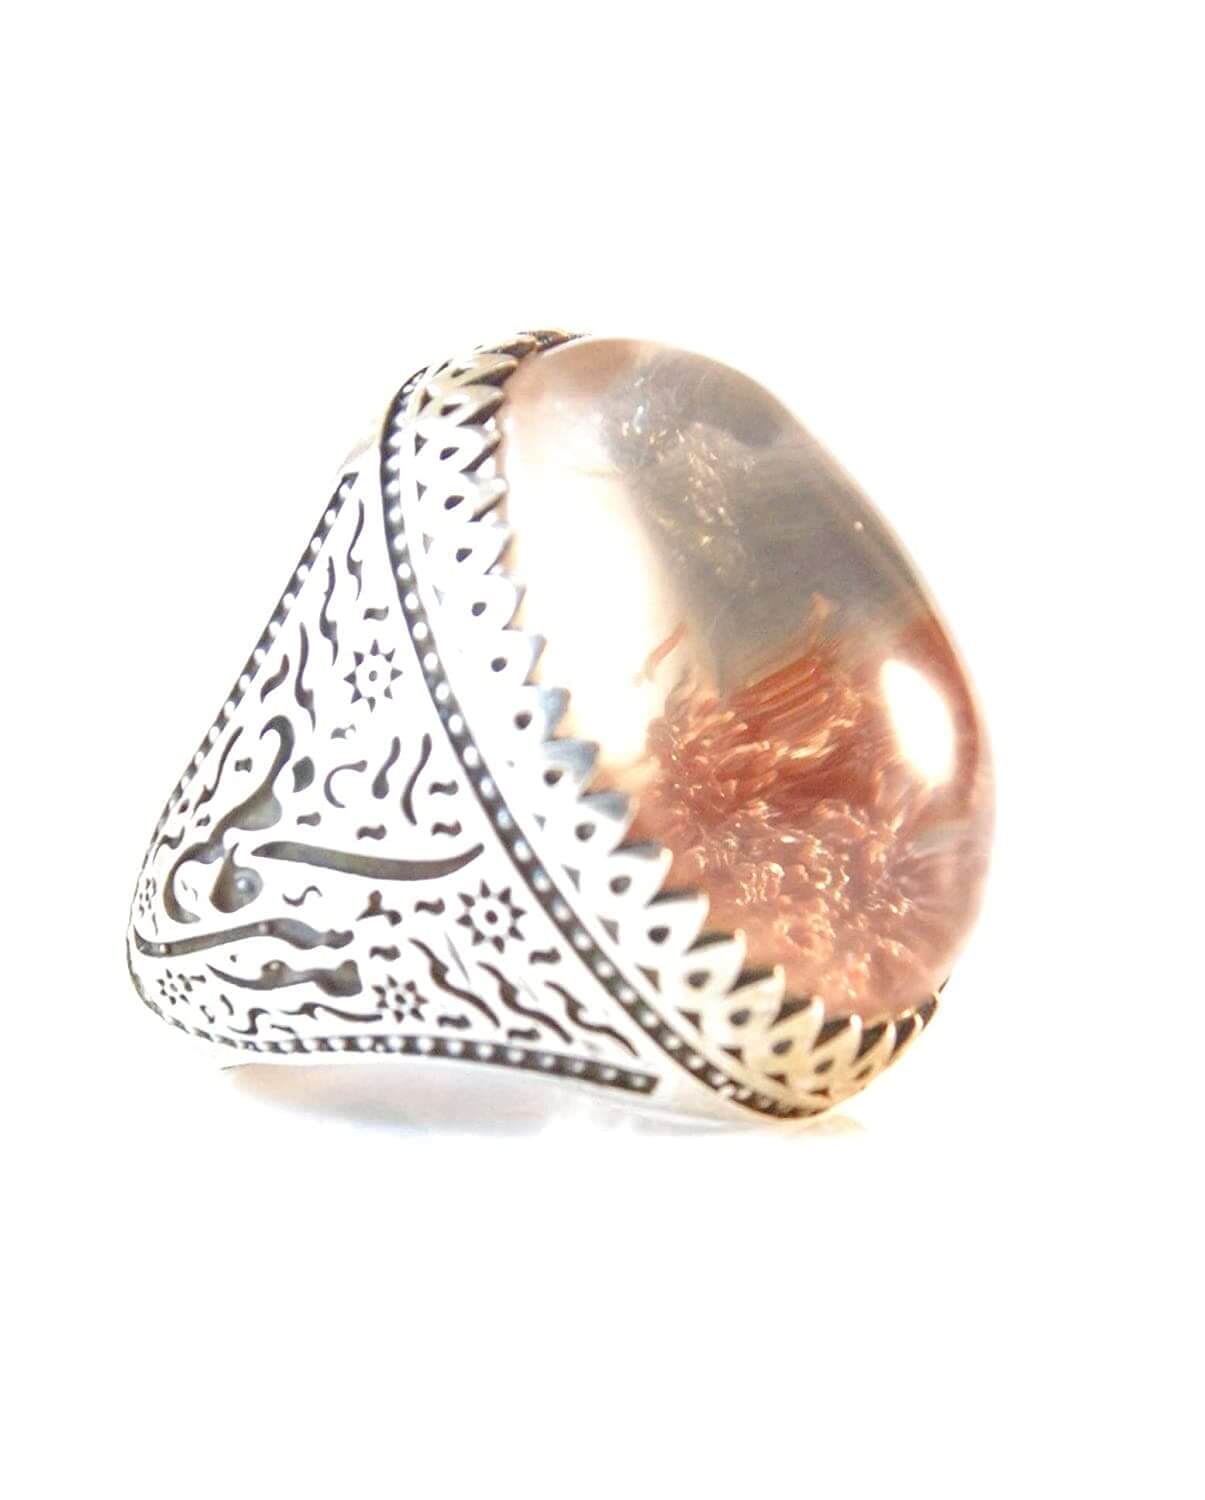 Dur Ring Silver | خاتم در | AlAliGems | Genuine Dur Stone Ring Size 12 - Al Ali Gems